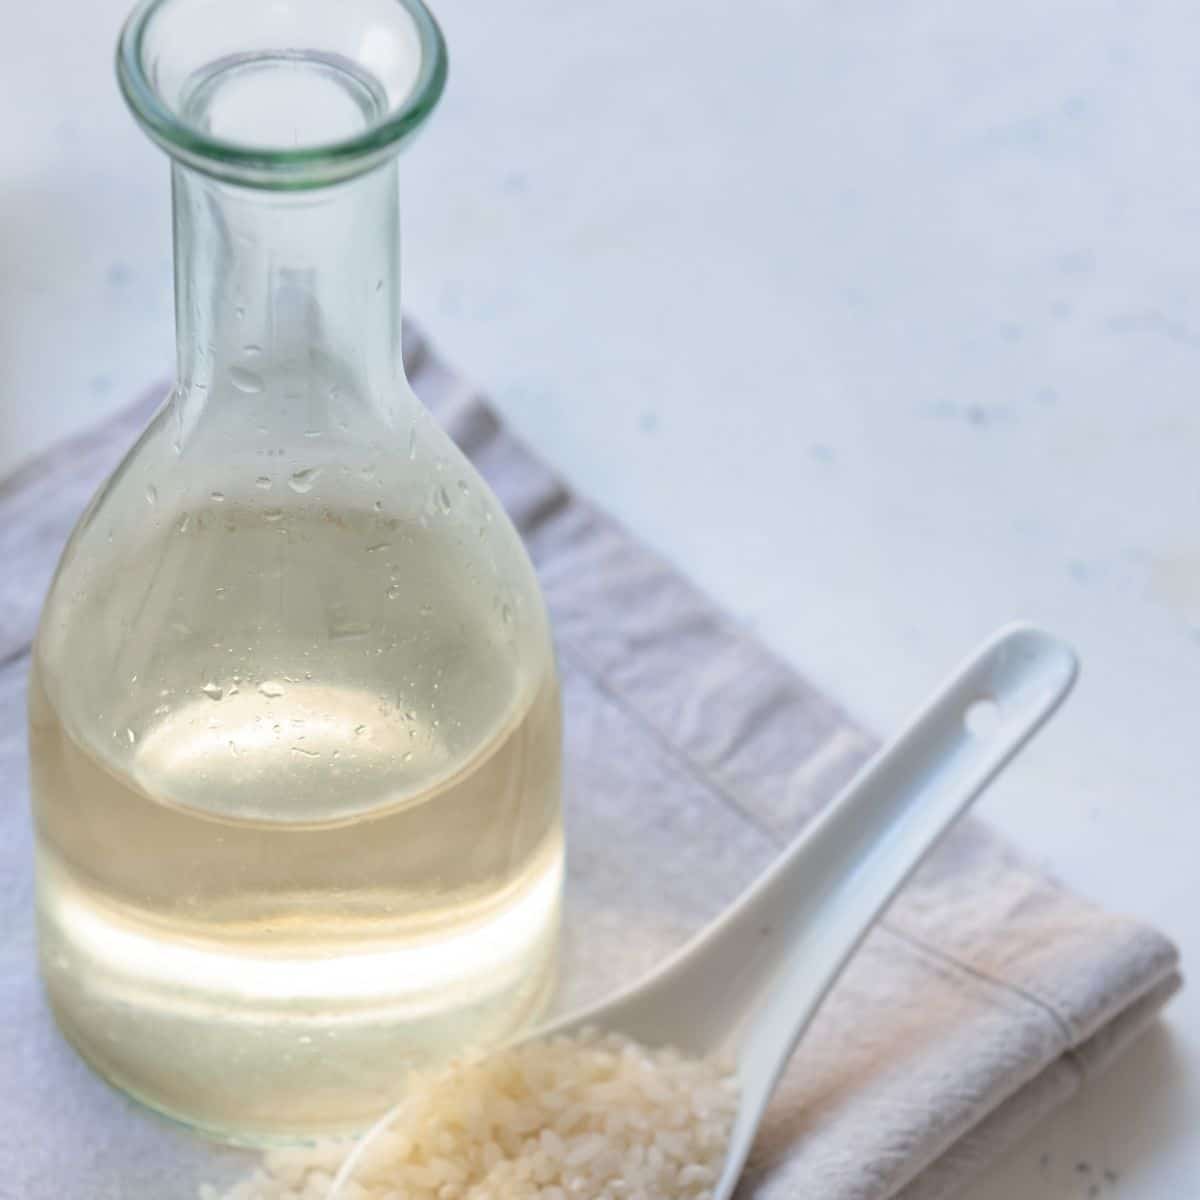 あらゆるレシピで使用するのに最適な米酢代替オプション。